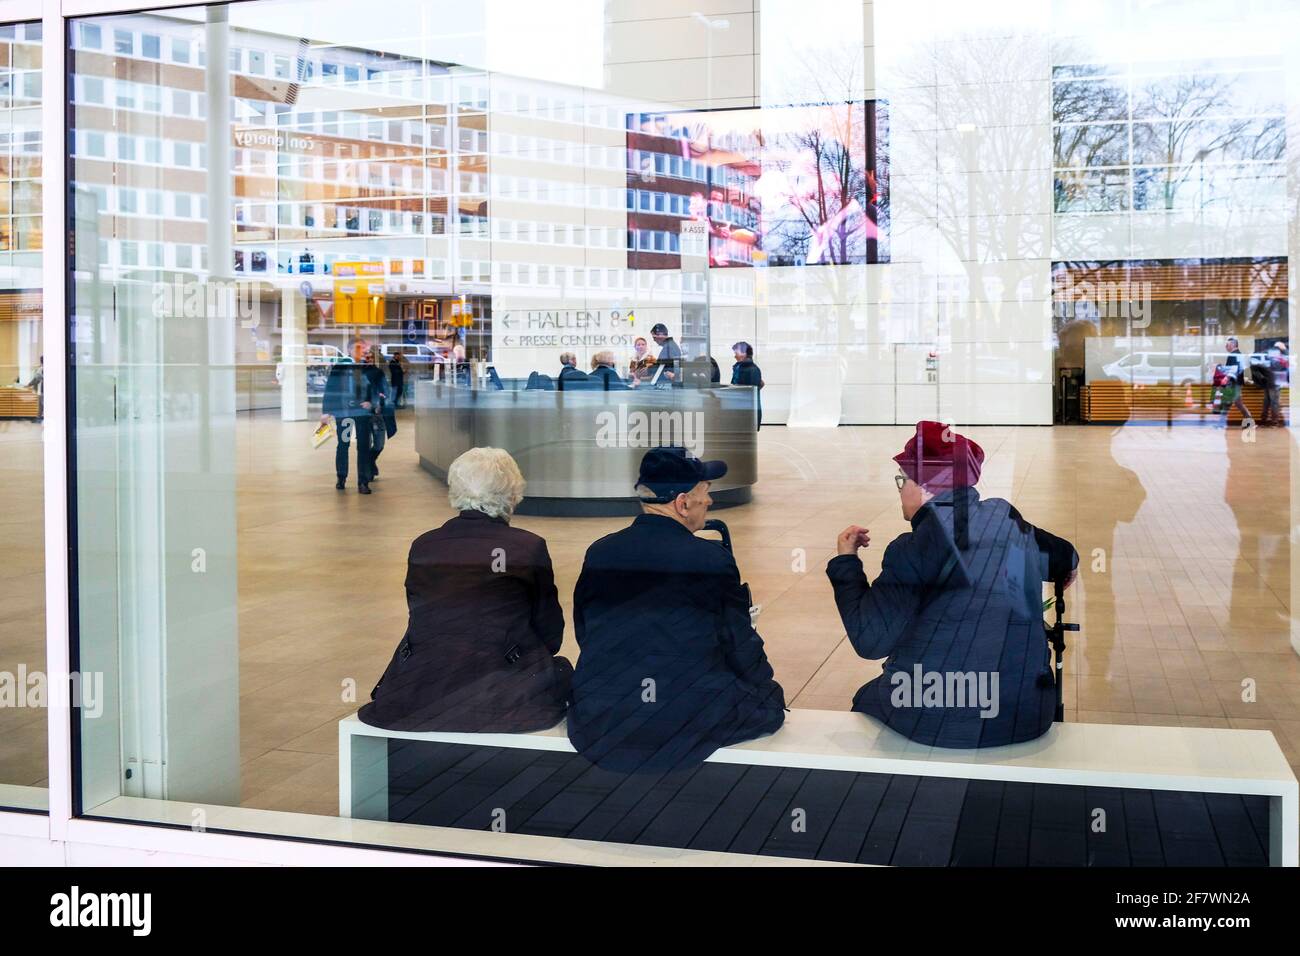 27.02.2020, Essen, Nordrhein-Westfalen, Deutschland - aeltere Messebesucher auf einer Bank in der neuen Eingangshalle Ost der Messe Essen waehrend der Stock Photo